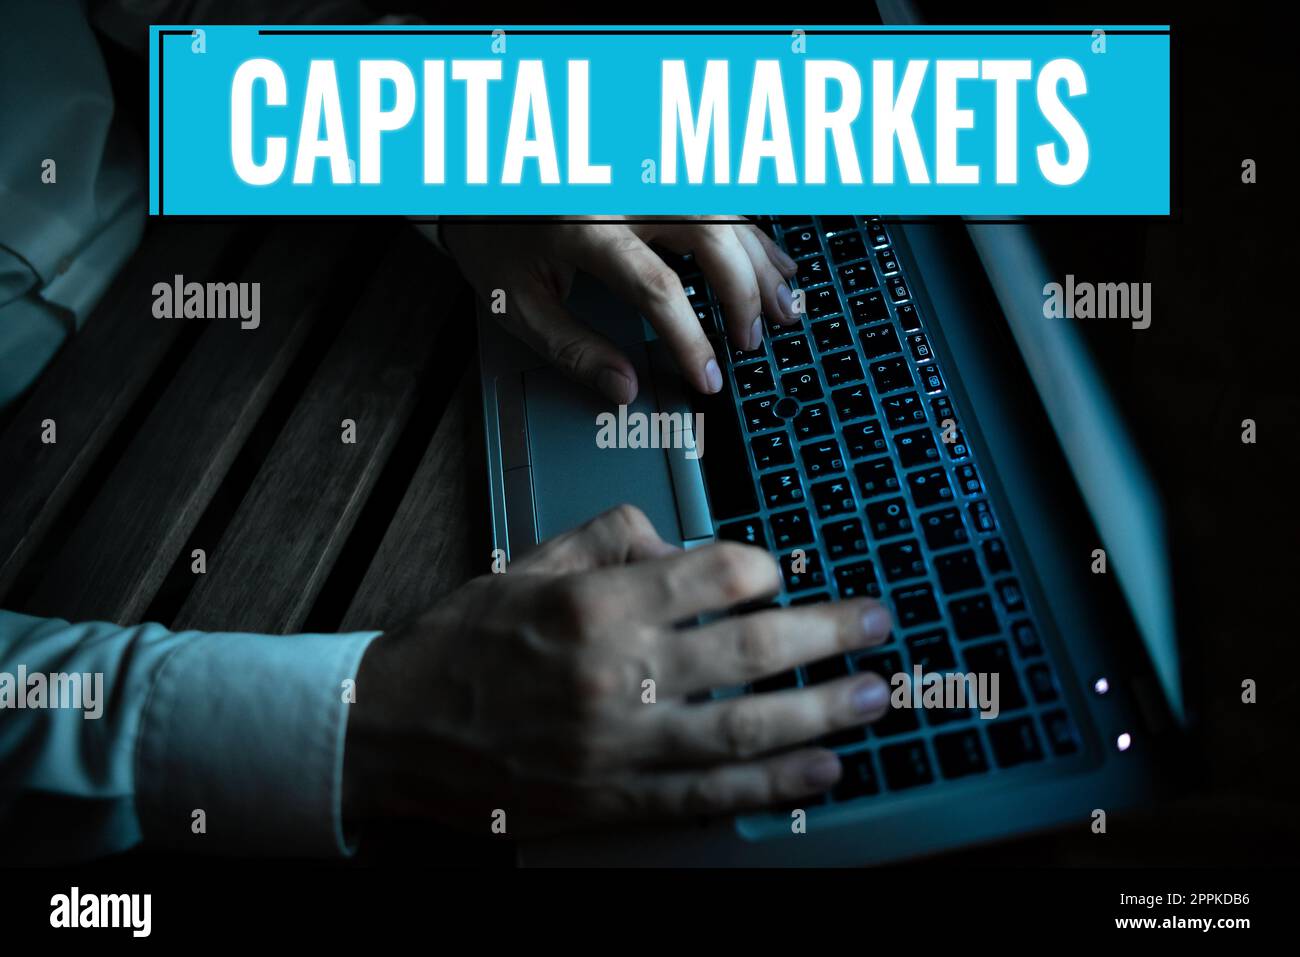 Schreiben von Text Capital Markets. Konzept bedeutet, dass Unternehmen Mittel beschaffen können, indem sie Marktsicherheit bieten Stockfoto